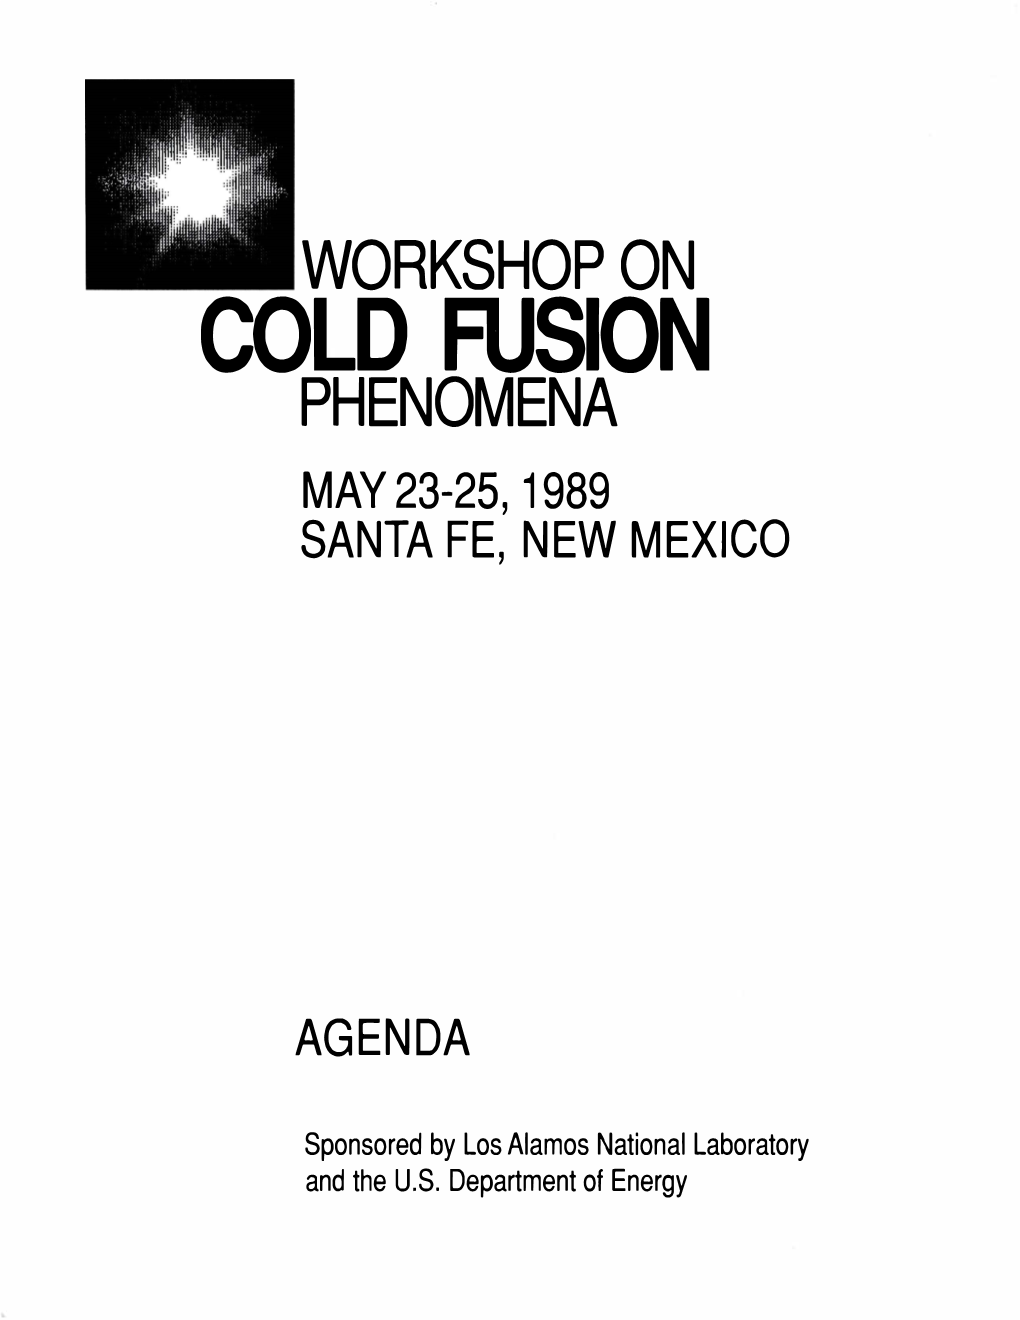 Cold Fusion Phenomena May 23-25, 1989 Santa Fe, New Mexico